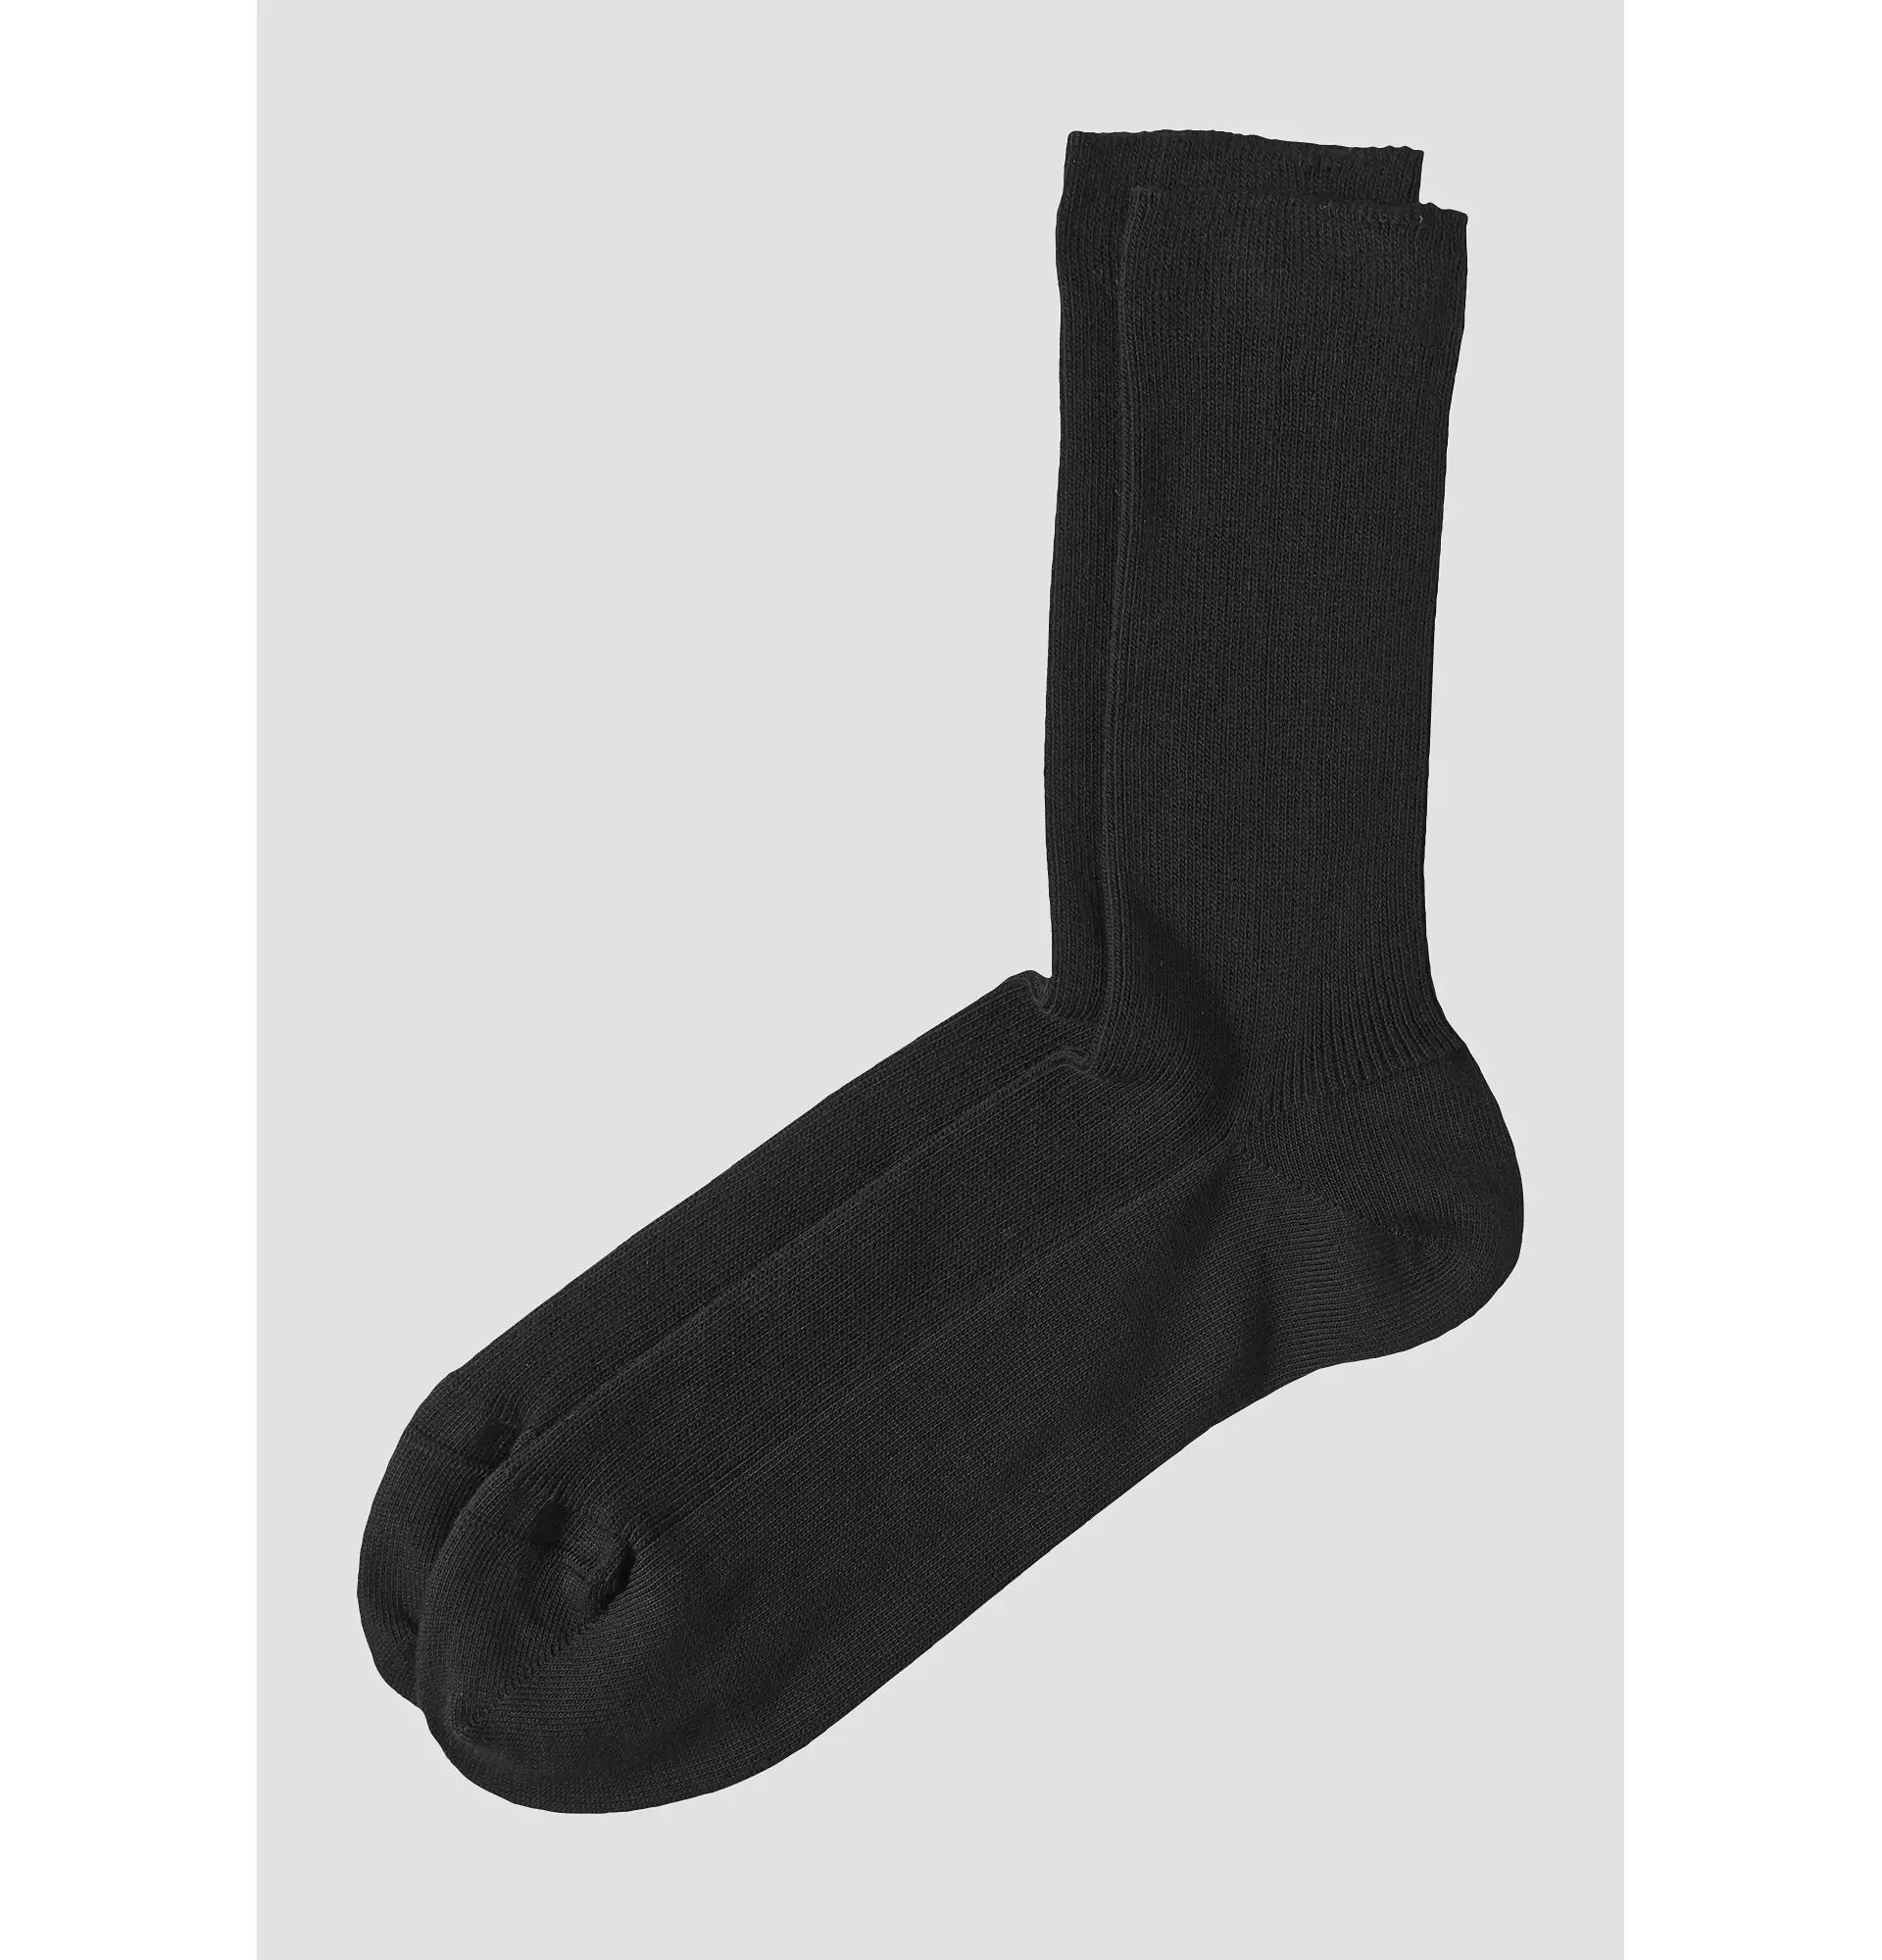 Socke aus reiner Bio-Baumwolle - 0